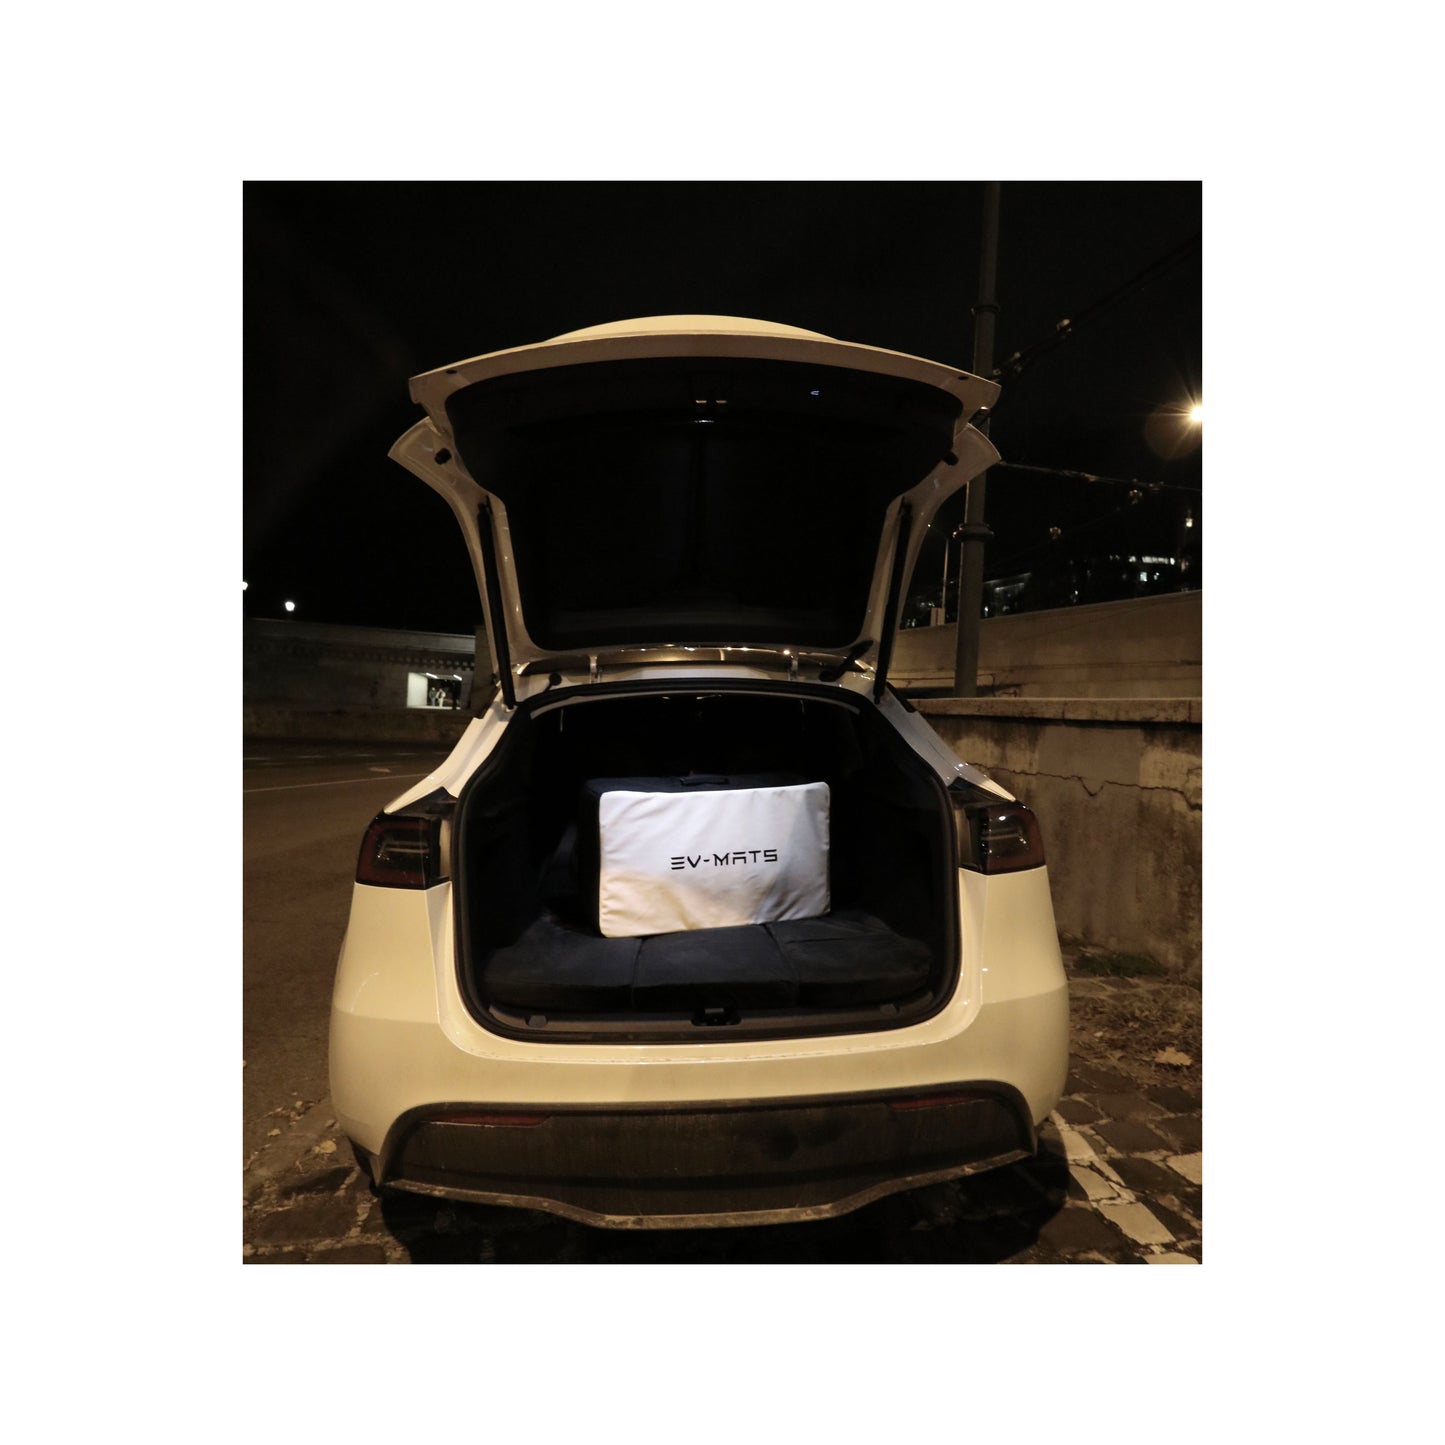 Colchón EV-MATS Tesla Model Y y la bolsa de transporte es un colchón premium de espuma viscoelástica, se ajusta perfectamente a las dimensiones del Tesla Model Y, proporciona una comodidad perfecta para dormir y se puede almacenar en el maletero.